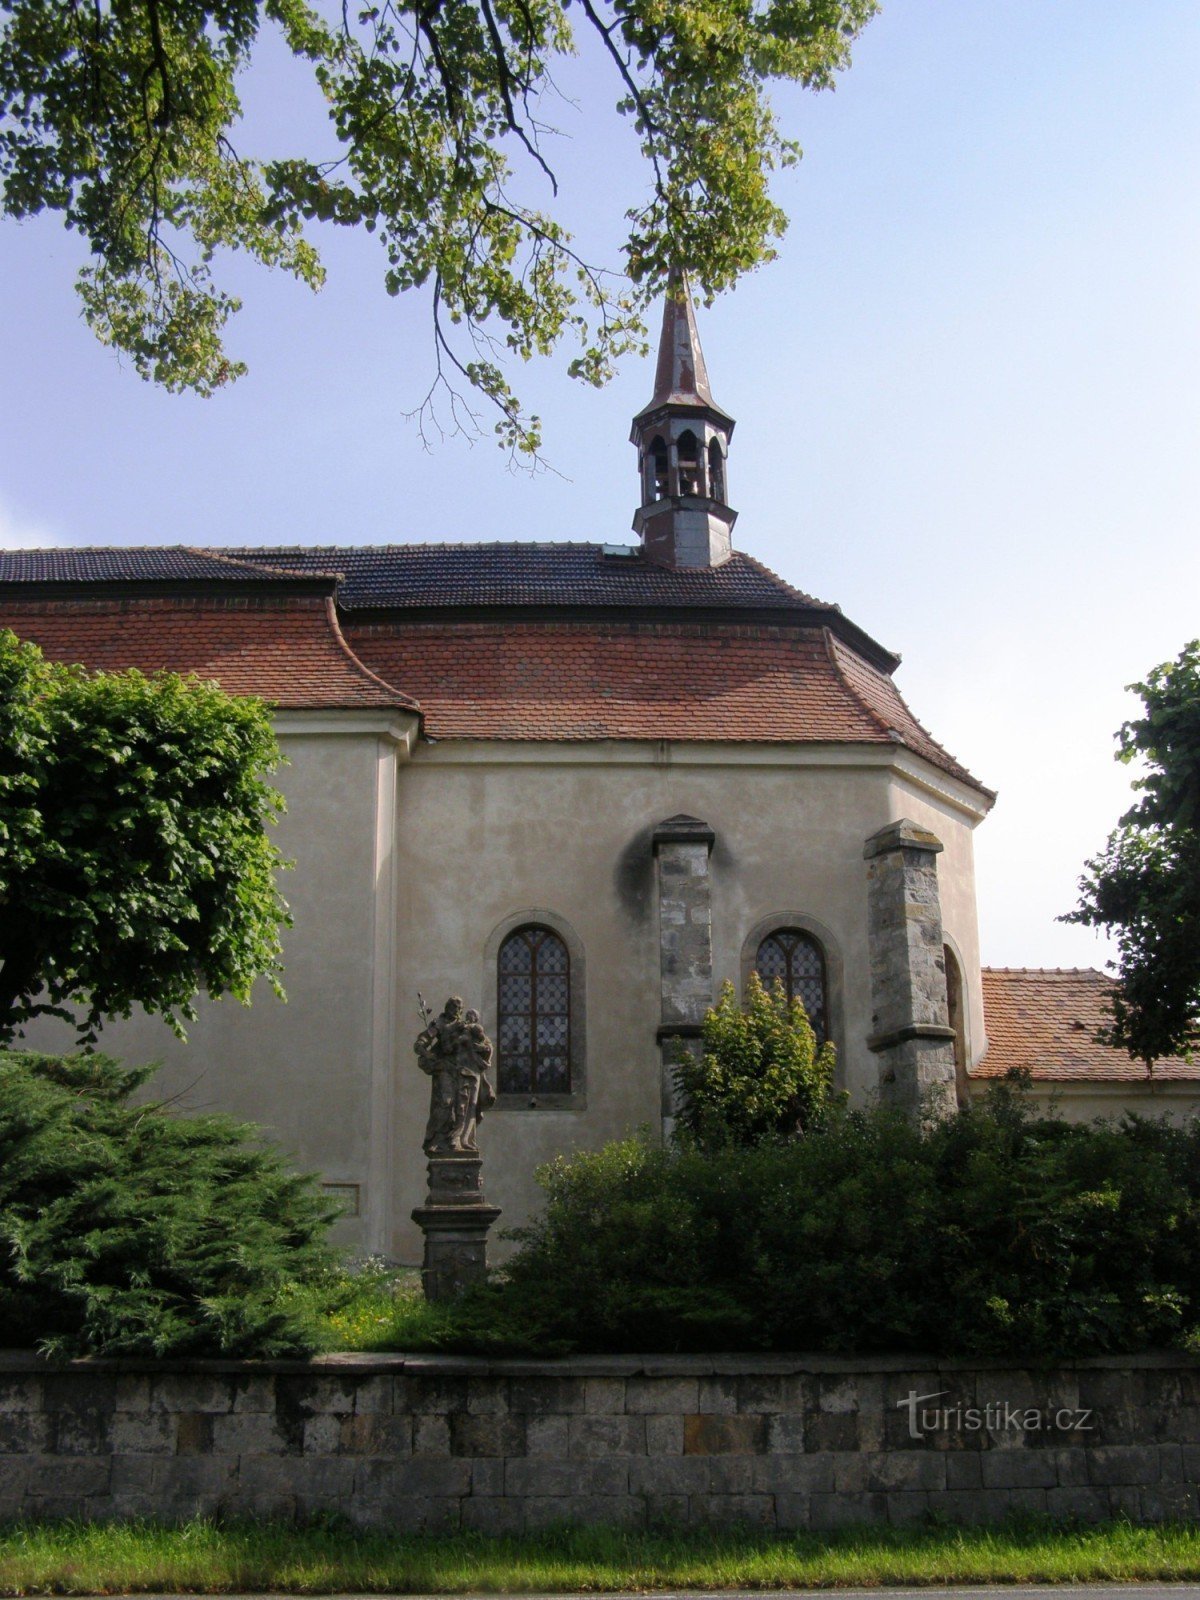 Libuň - Igreja de S. Martinho